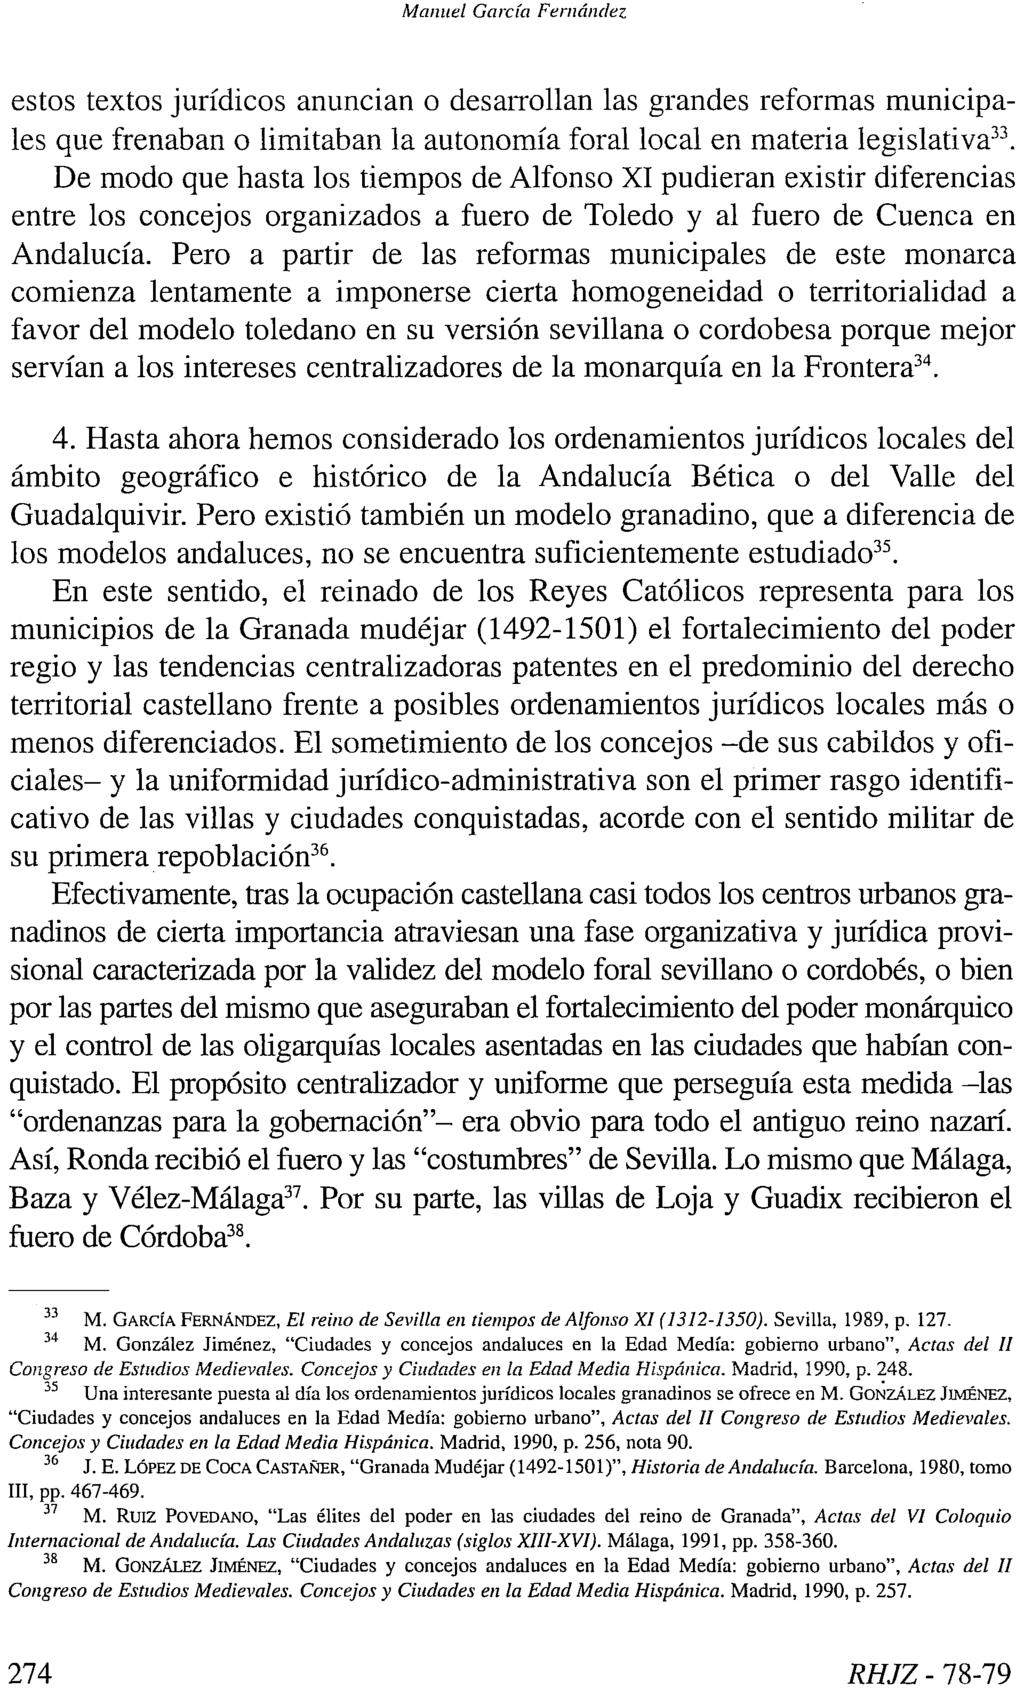 Manuel García Fernández estos textos jurídicos anuncian o desarrollan las grandes reformas municipales que frenaban o limitaban la autonomía foral local en materia legislativa 33.